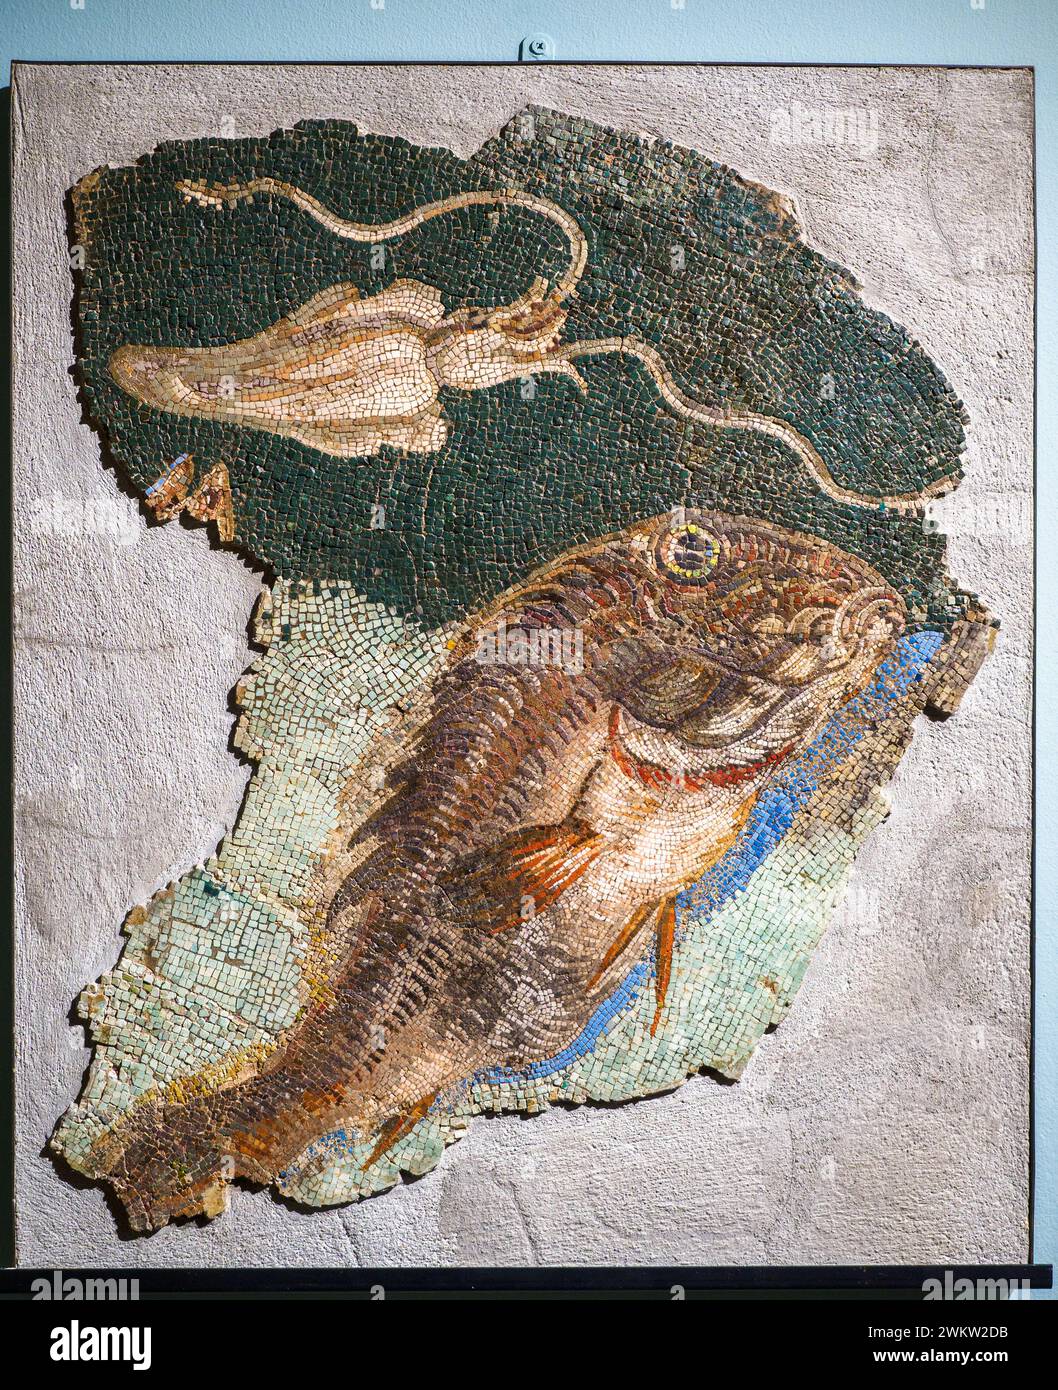 Polychromes Mosaik mit Meeresboden - 1. Quartal 1. Jh. v. Chr. - extrem winzige Kalkstein-, Marmor- und Glaspaste - dieses hochraffinierte Mosaik, von dem große Fragmente erhalten sind, bildete den Pflaster einer kleinen thermischen Umgebung mit "Gipskaminen"; wahrscheinlich auf einen luxuriösen Domus aus der späten republikanischen Ära auf dem Viminal-Hügel – Museo Centrale Montemartini, Rom, Italien Stockfoto